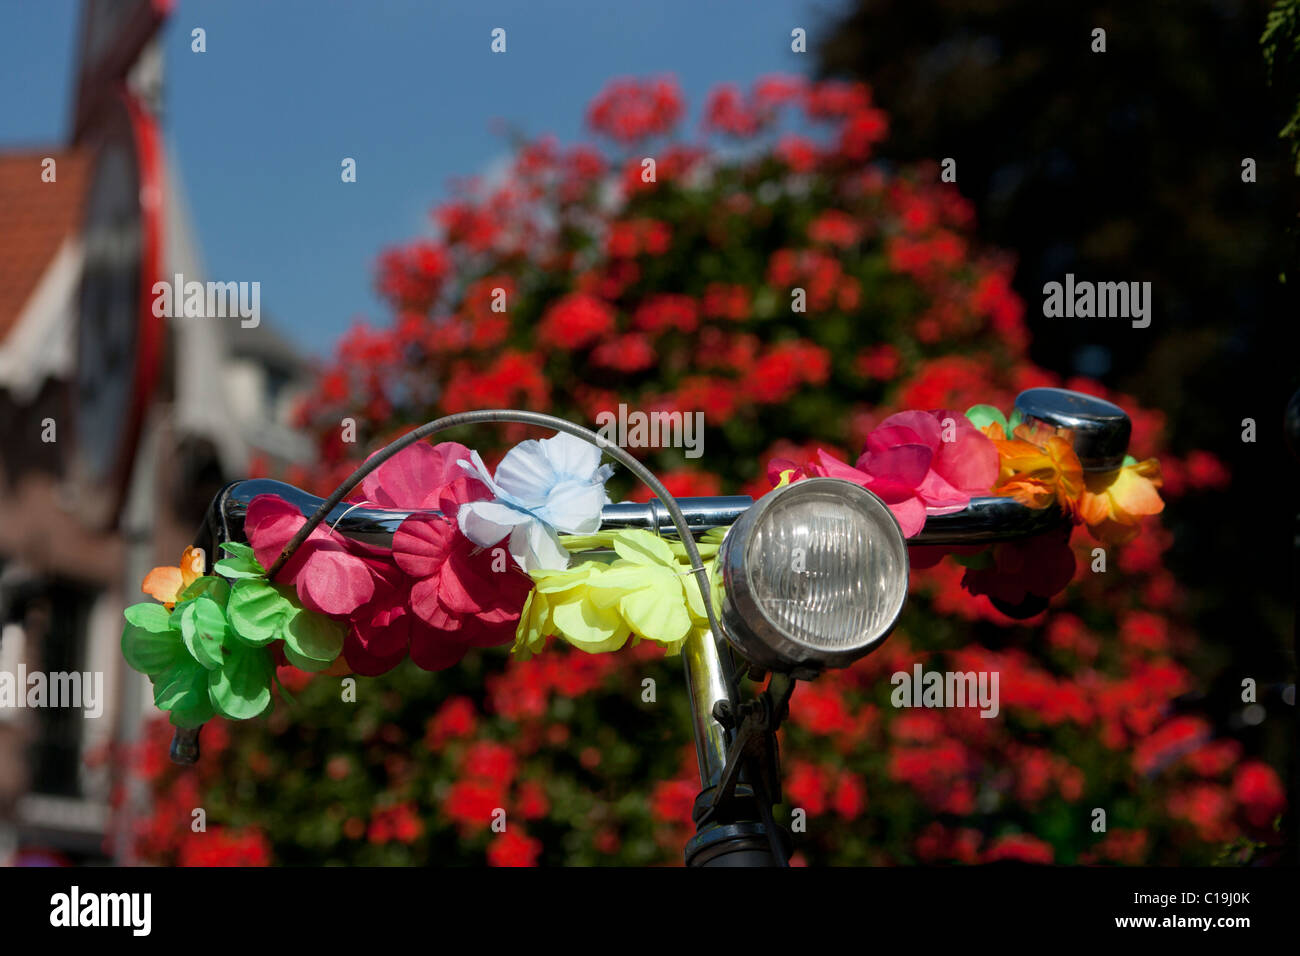 Fahrradlenker verziert mit Blumen, Holland Stockfotografie - Alamy